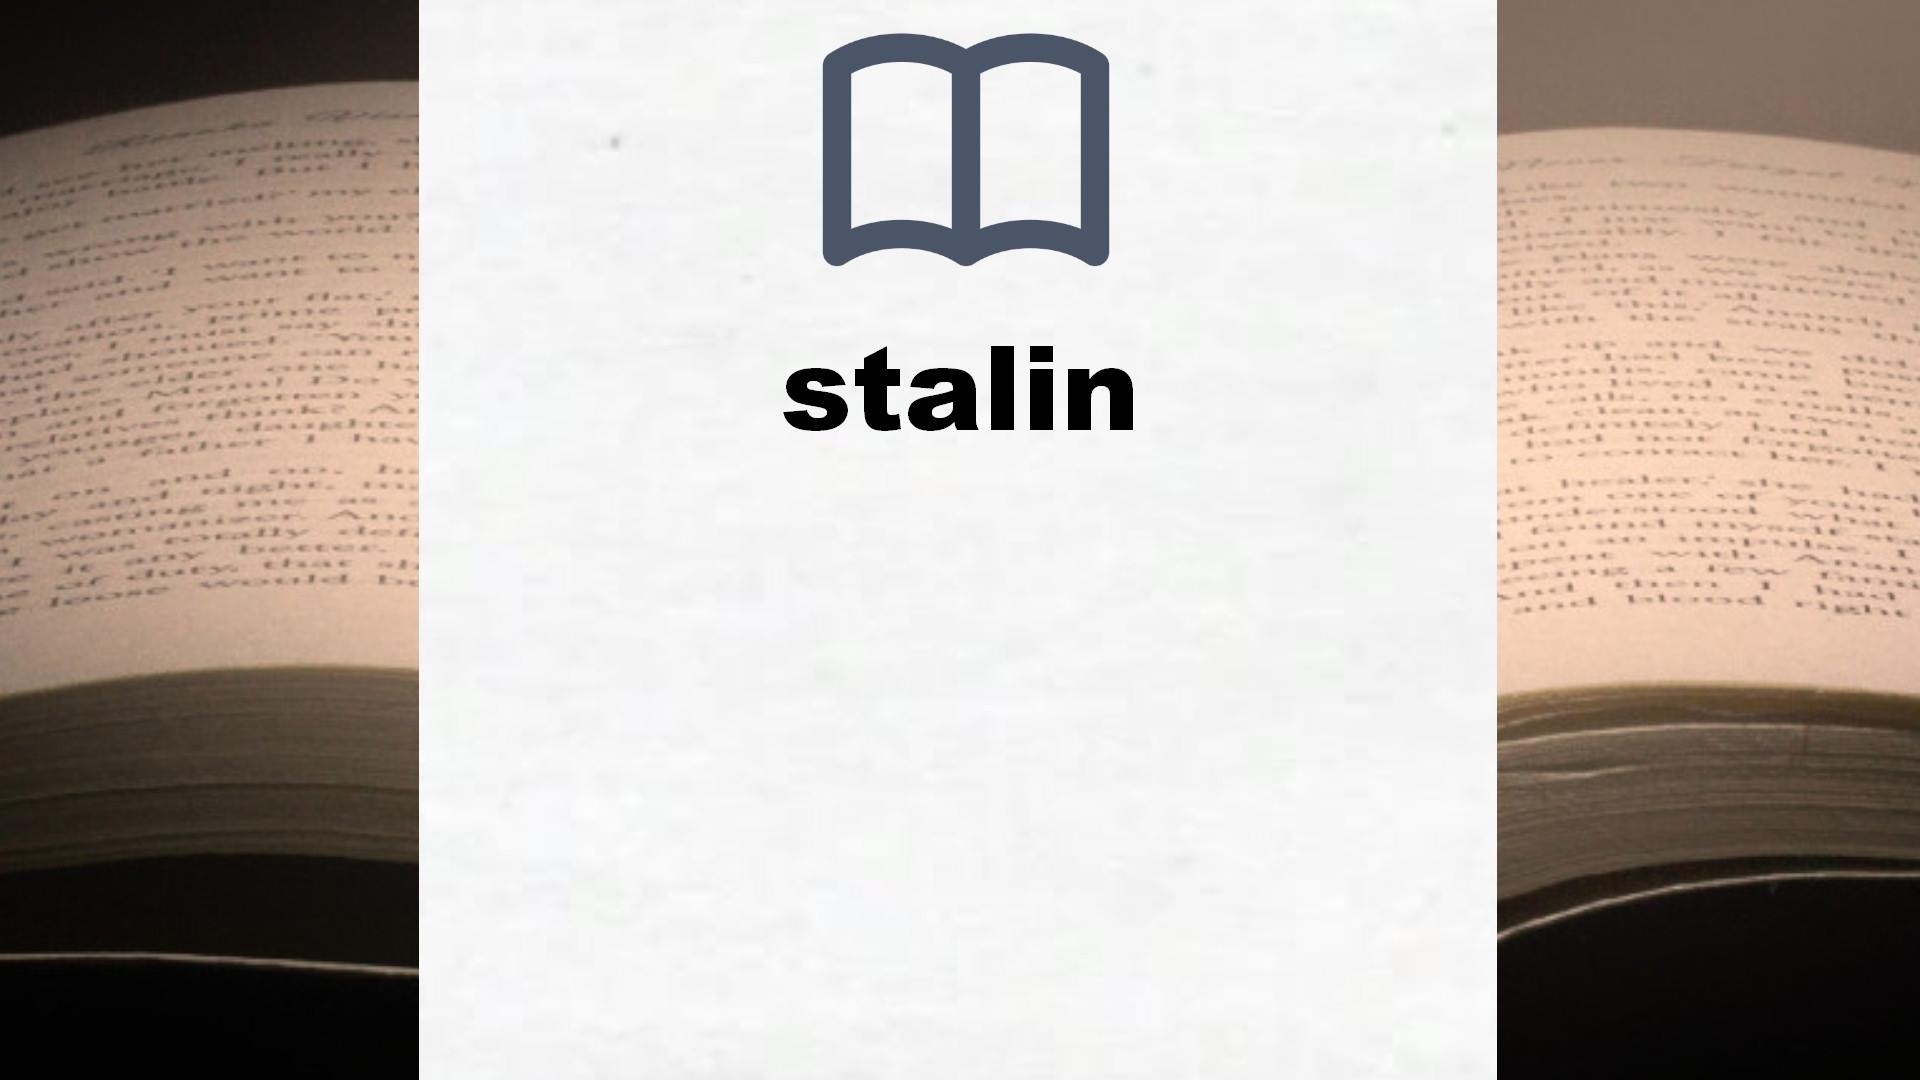 Libros sobre stalin